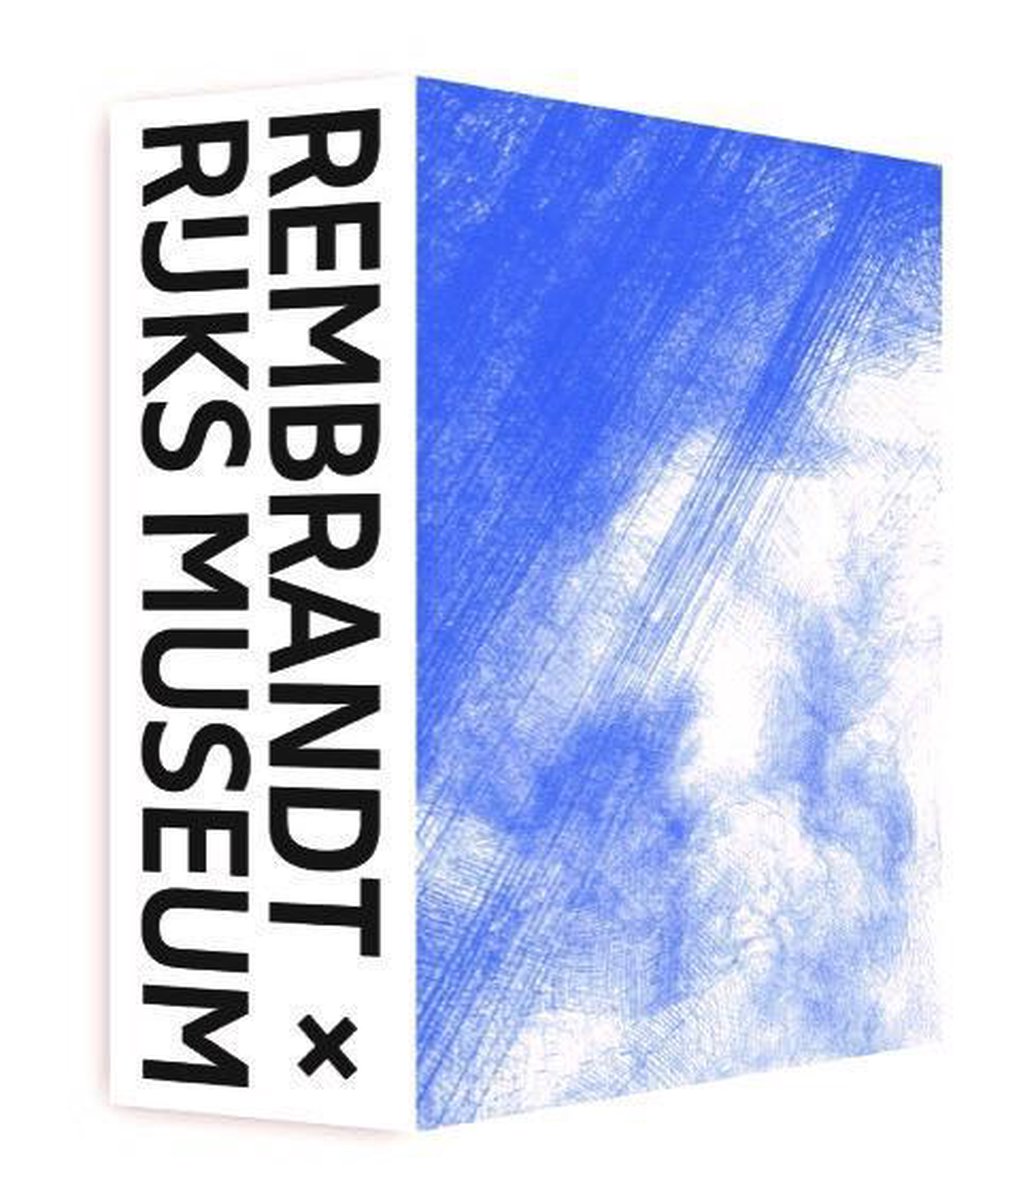 Rembrandt x Rijksmuseum